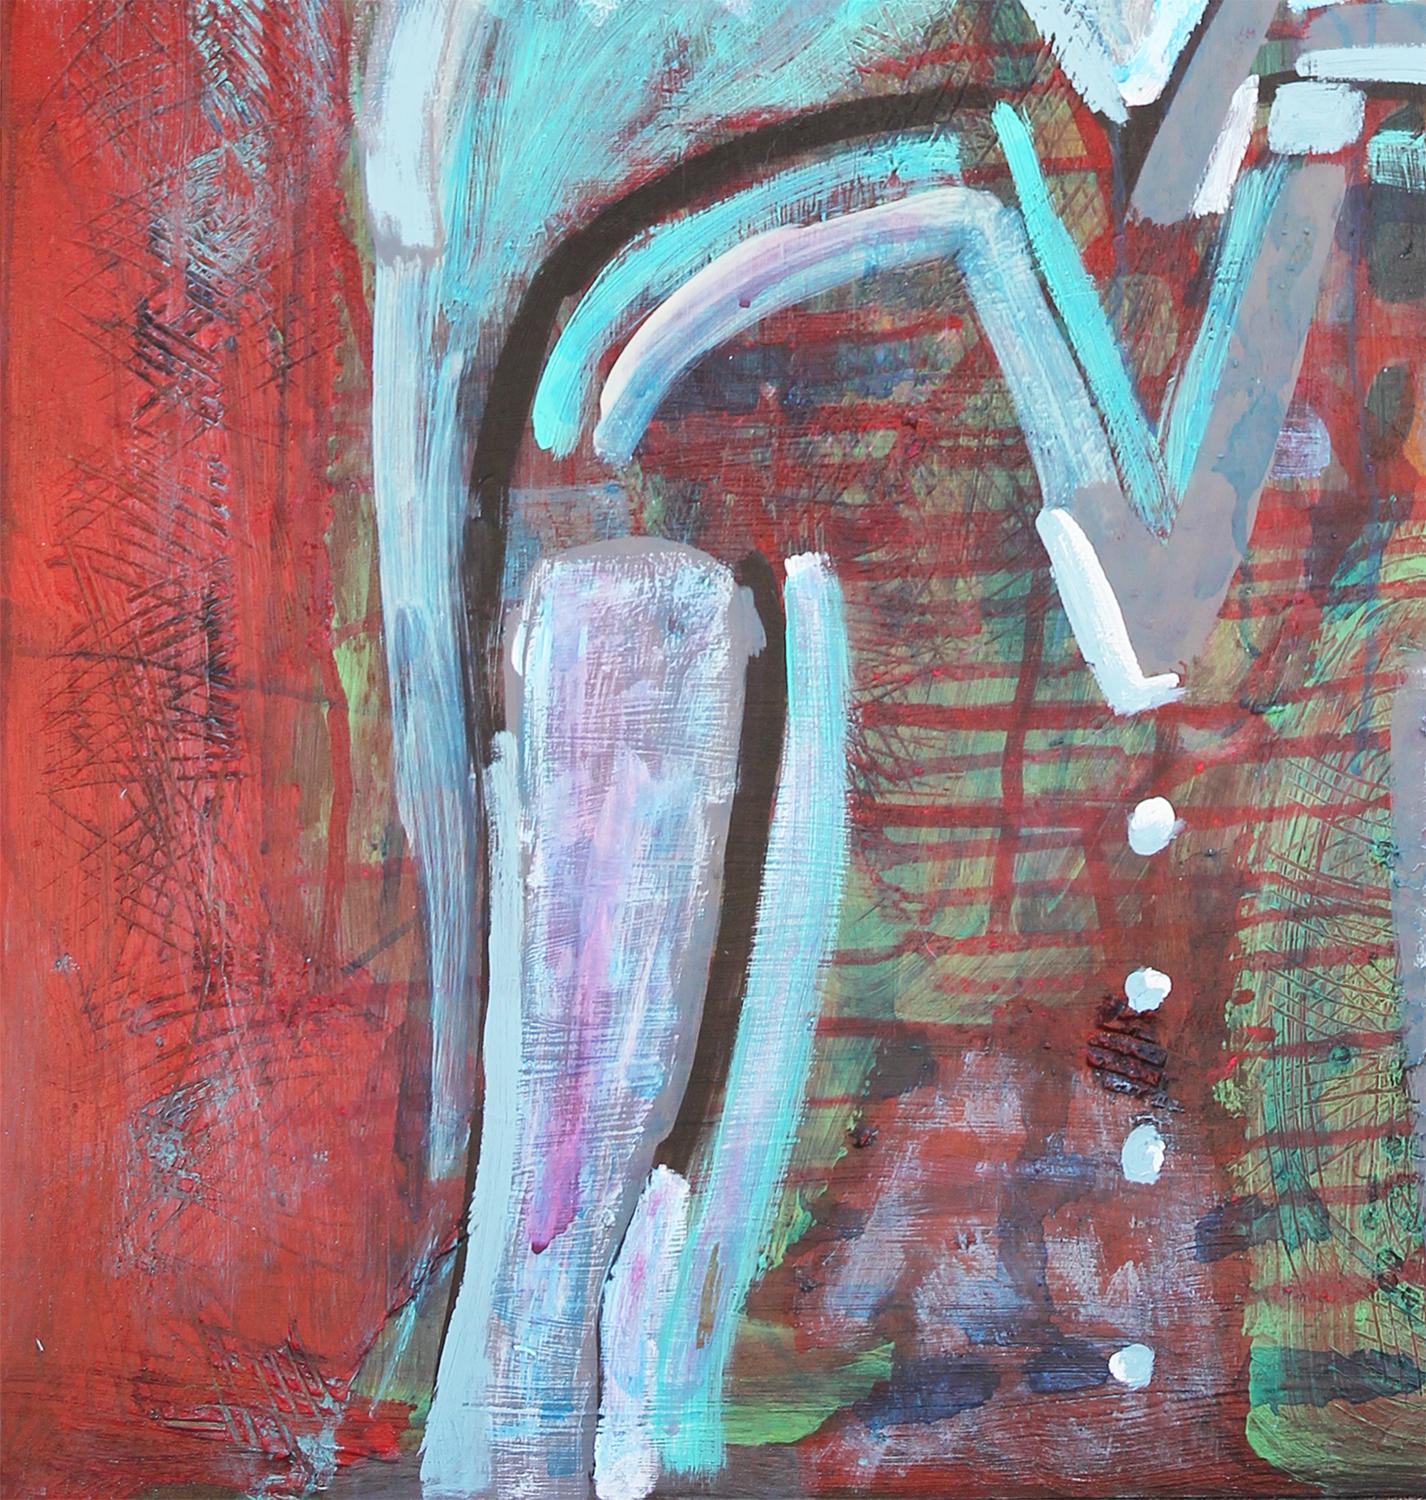 Peinture figurative abstraite longitudinale rouge et bleue de Paul Reeves Art + Design/One, propriétaire de Reeves Art + Design et artiste de Houston, TX. Cette pièce représente une femme aux cheveux bleus et blancs sur un fond abstrait rouge. Signé